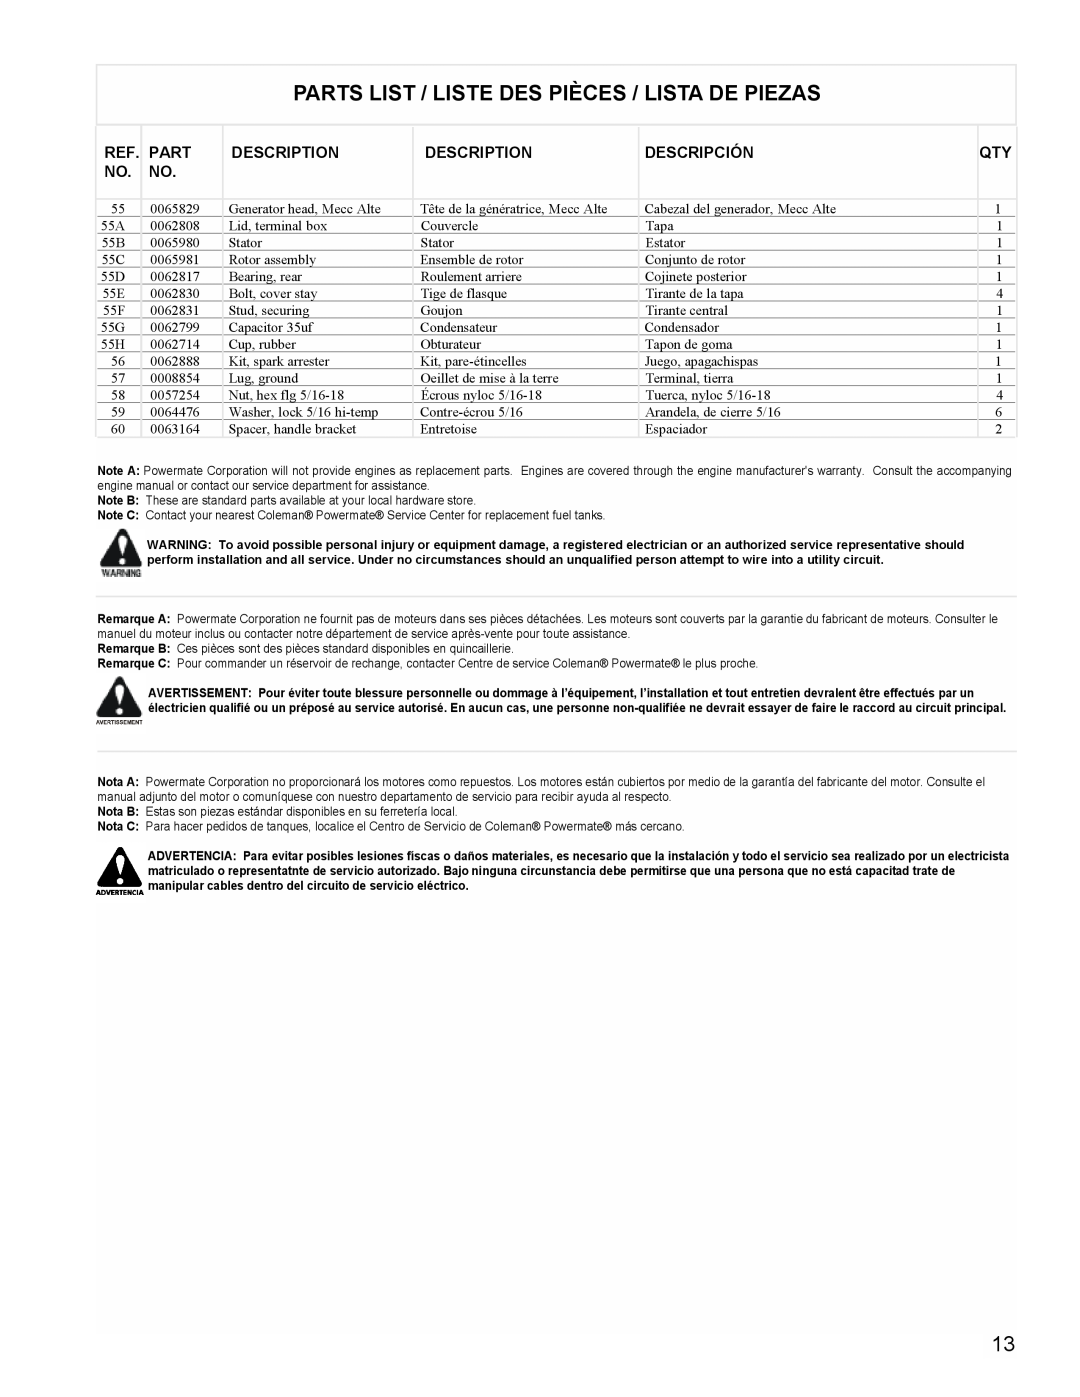 Powermate PM0605000 manual Parts List / Liste Des Pièces / Lista De Piezas, Description, Descripción 